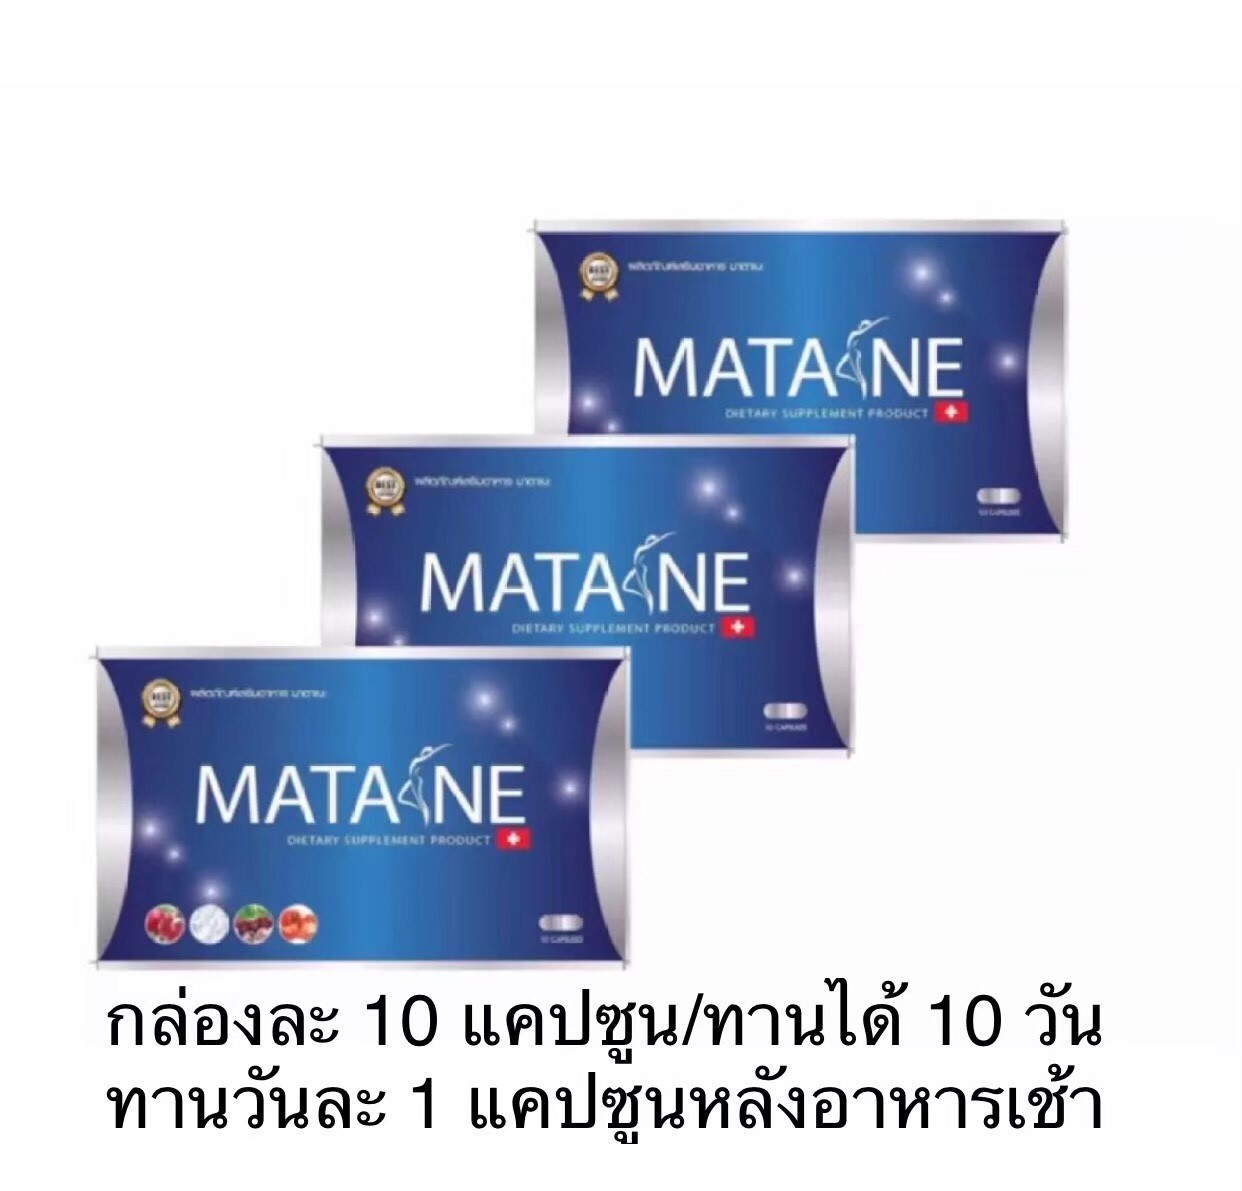 มาตาเนะ ผลิตภัณฑ์เสริมอาหาร ตรา Matane 3 กล่อง